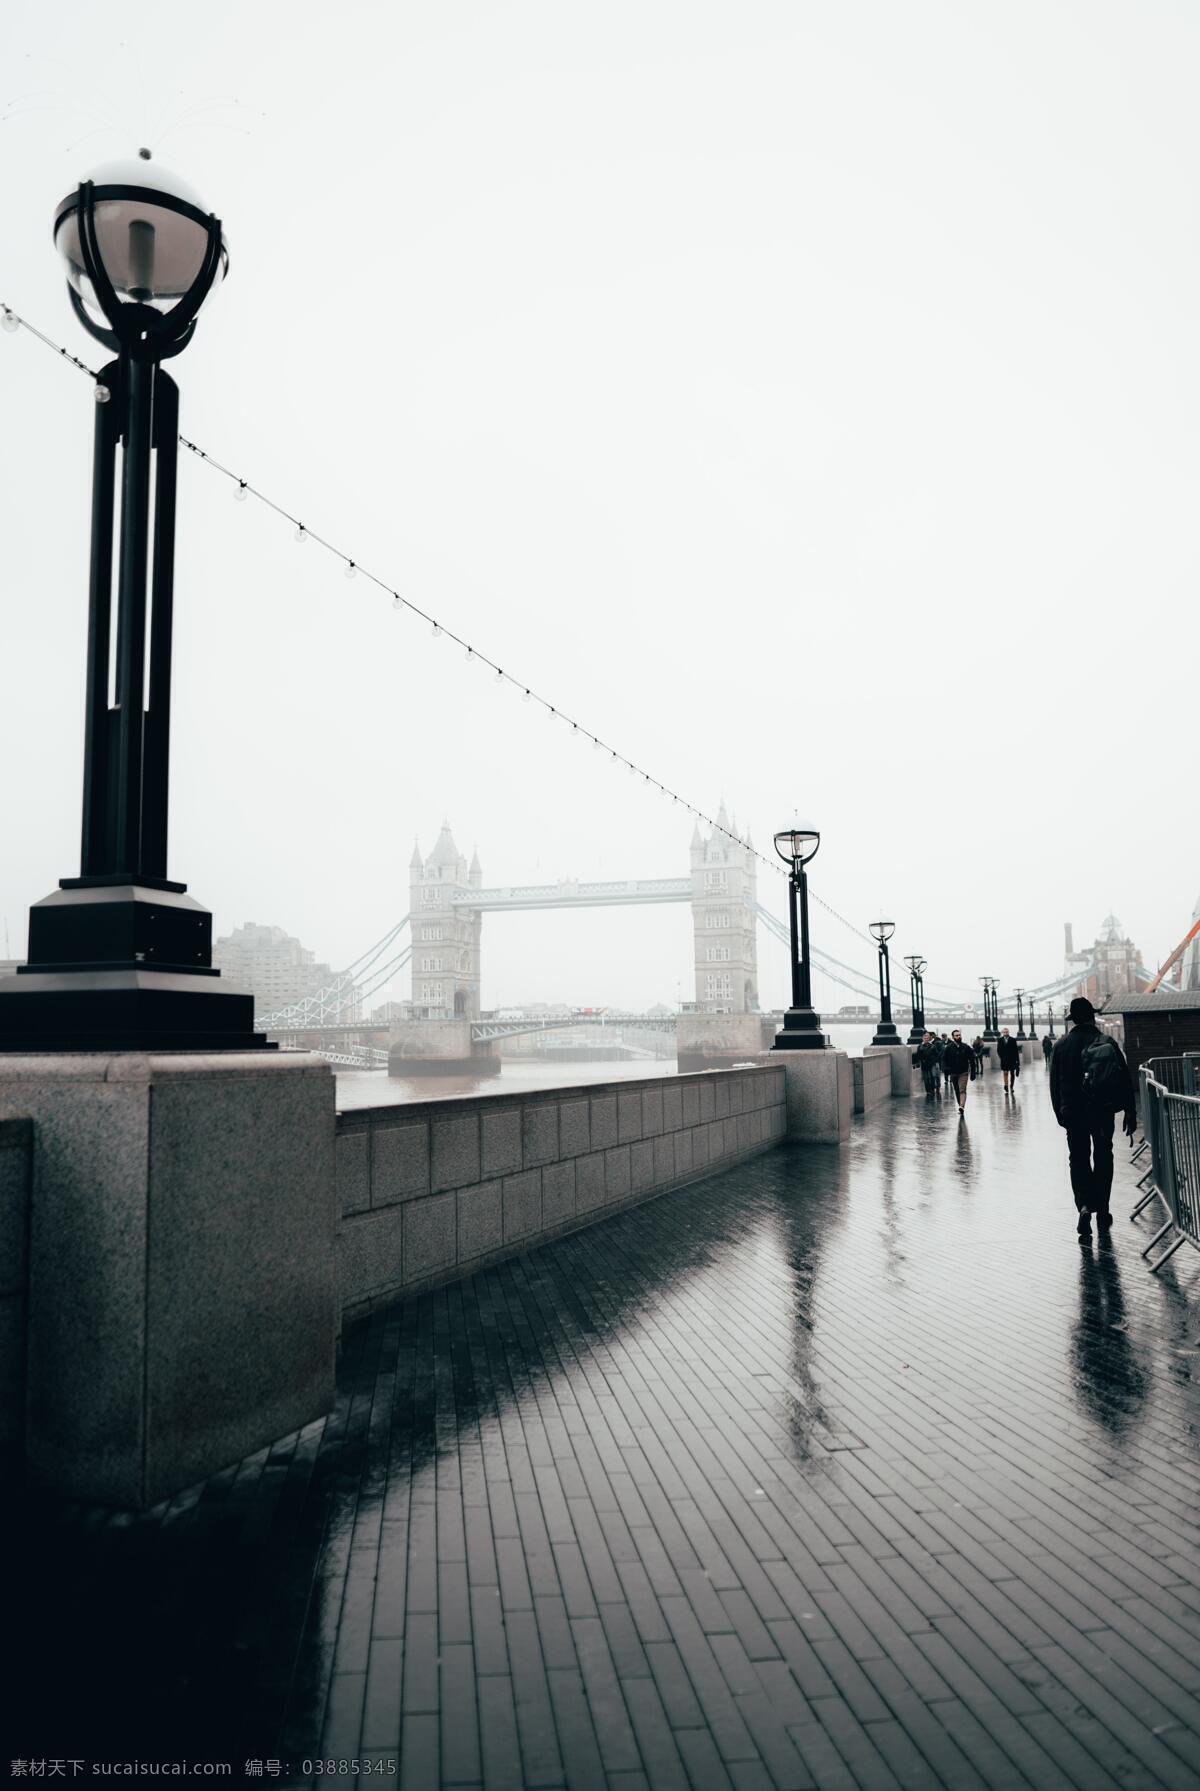 远处 英国 伦敦 双塔 伦敦双塔 英国伦敦 远处的英国 英国风景 伦敦大桥 灰色的天空 灰色风景 阴雨天 雨天 图库建筑城市 旅游摄影 国外旅游